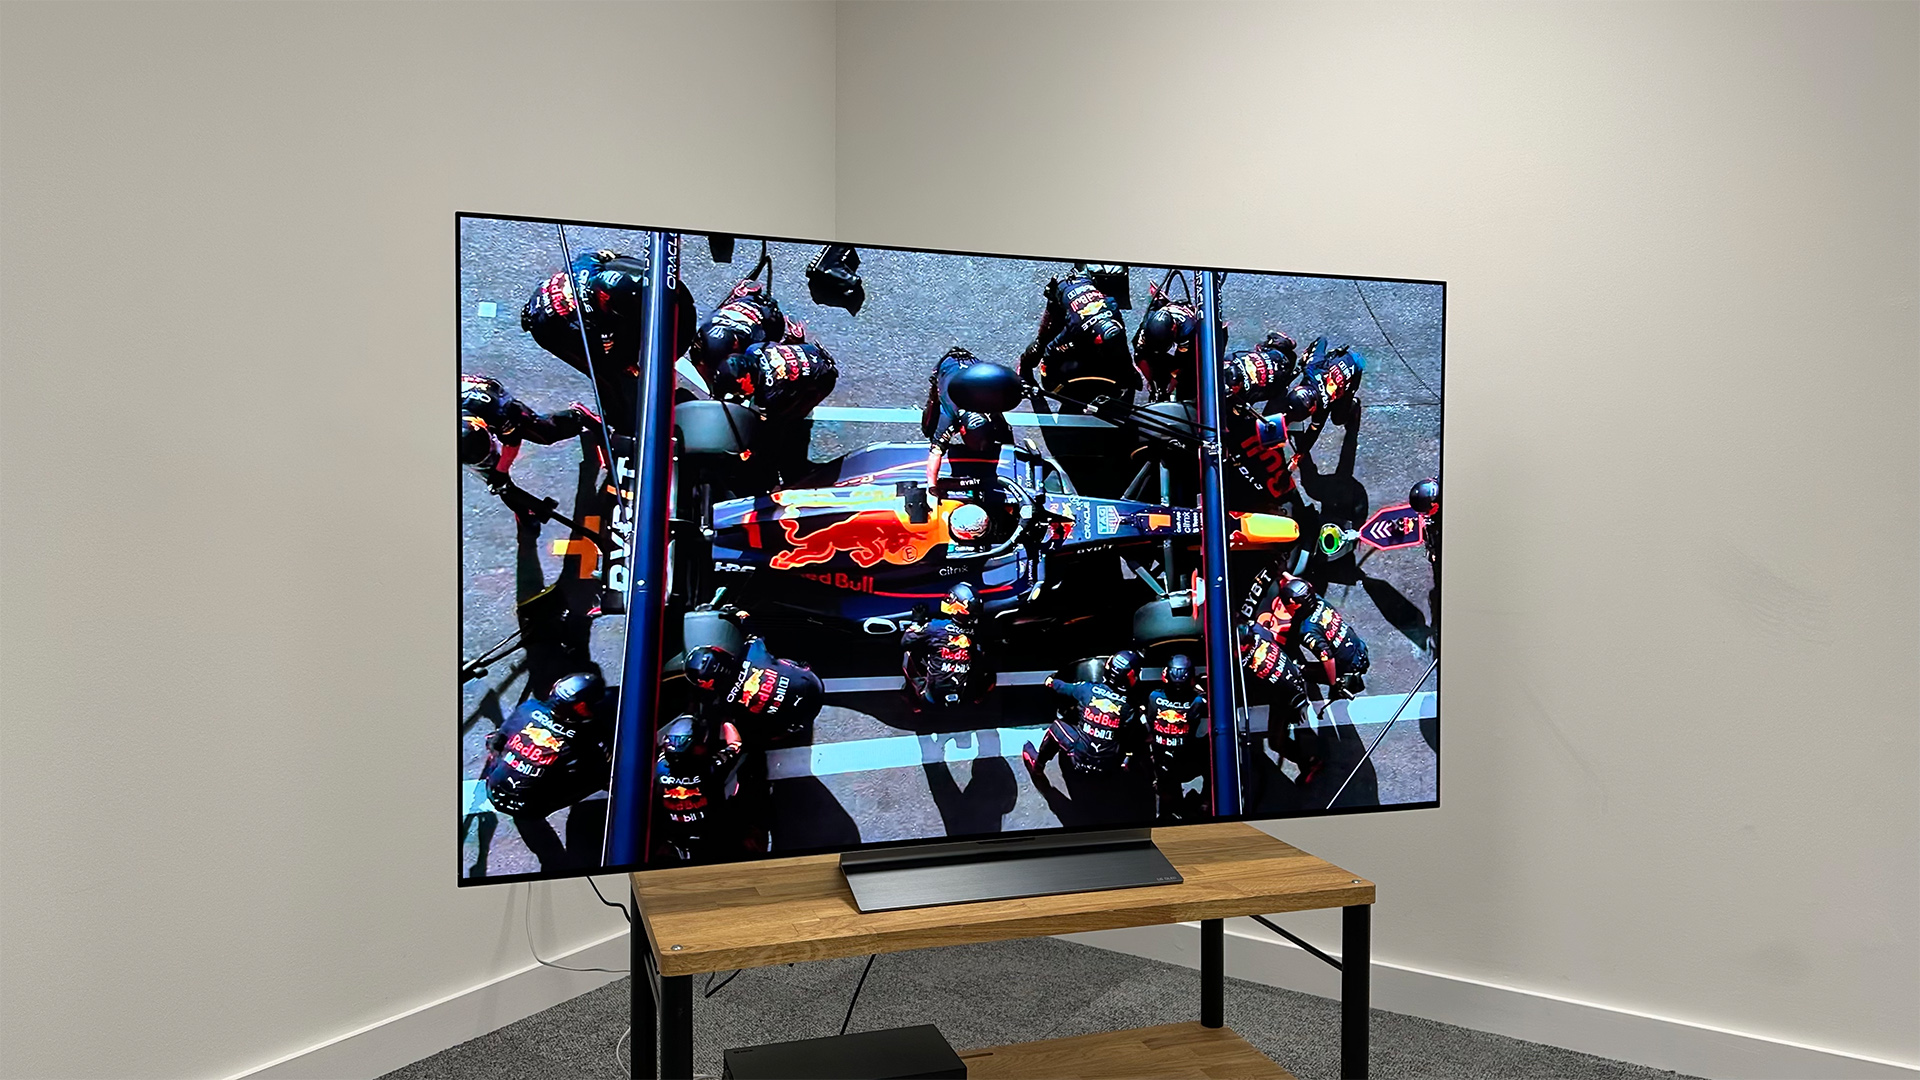 LG C4 OLED TV: Görmek istediğimiz 5 şey